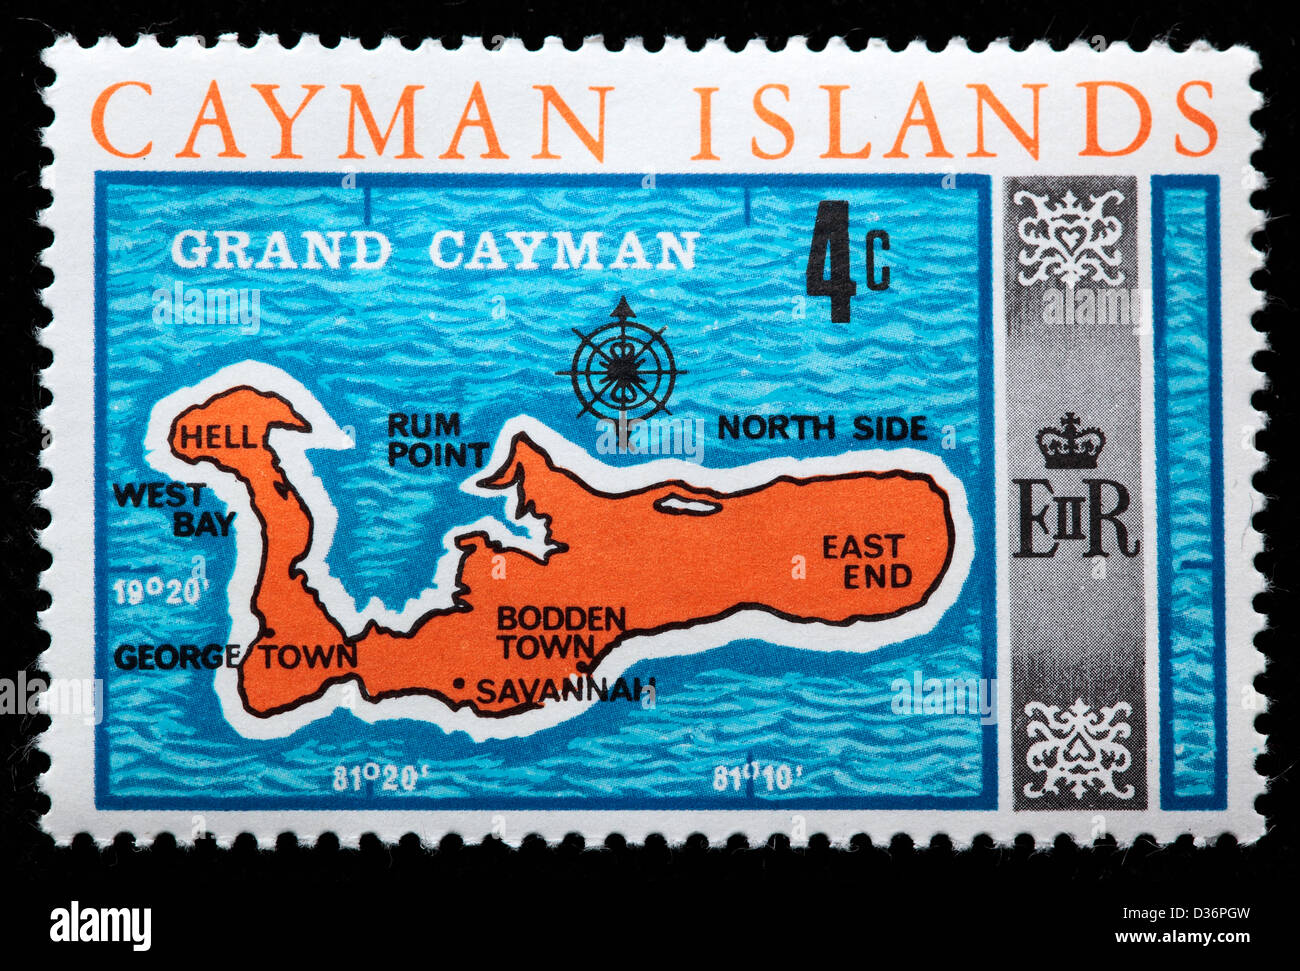 Grand Cayman carte, timbre-poste, les îles Caïmans, 1969 Banque D'Images